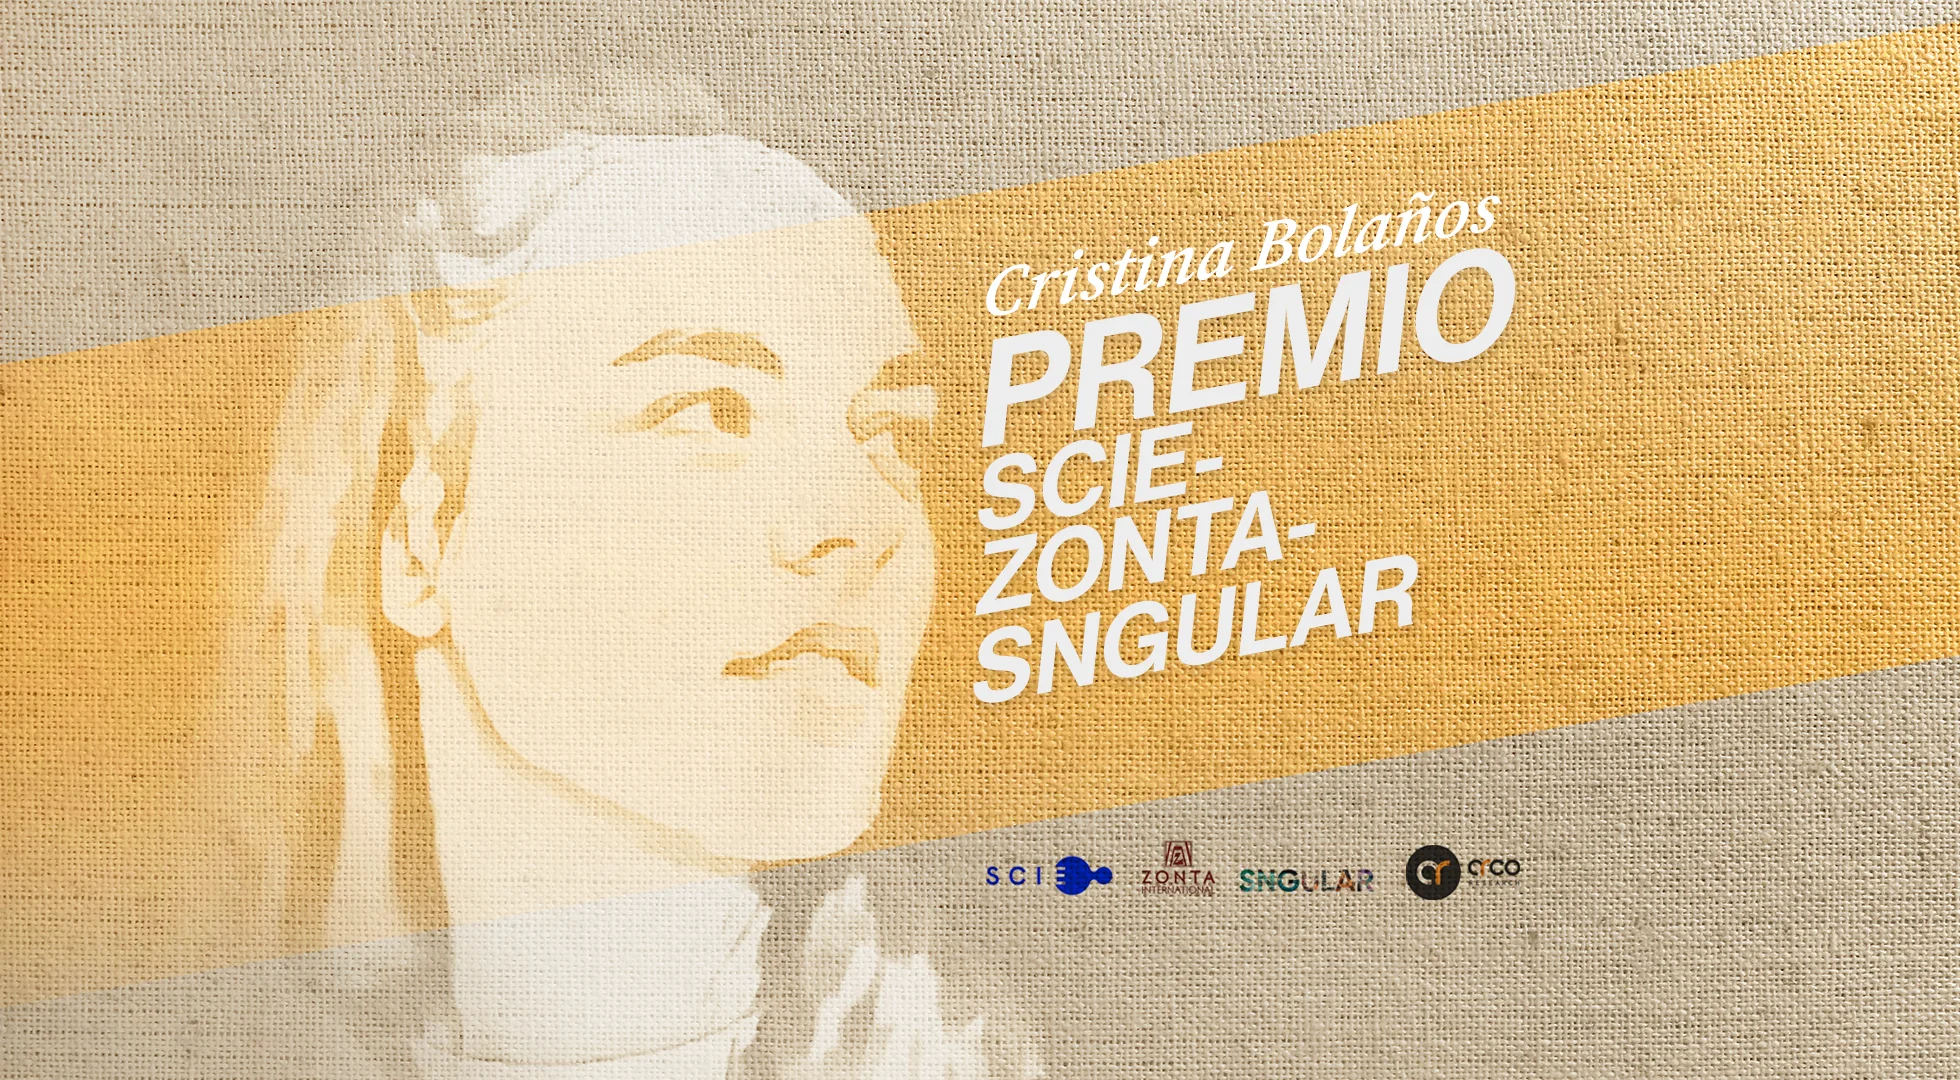 Rostro de Cristina Bolaños, premio scie-zonta-singular